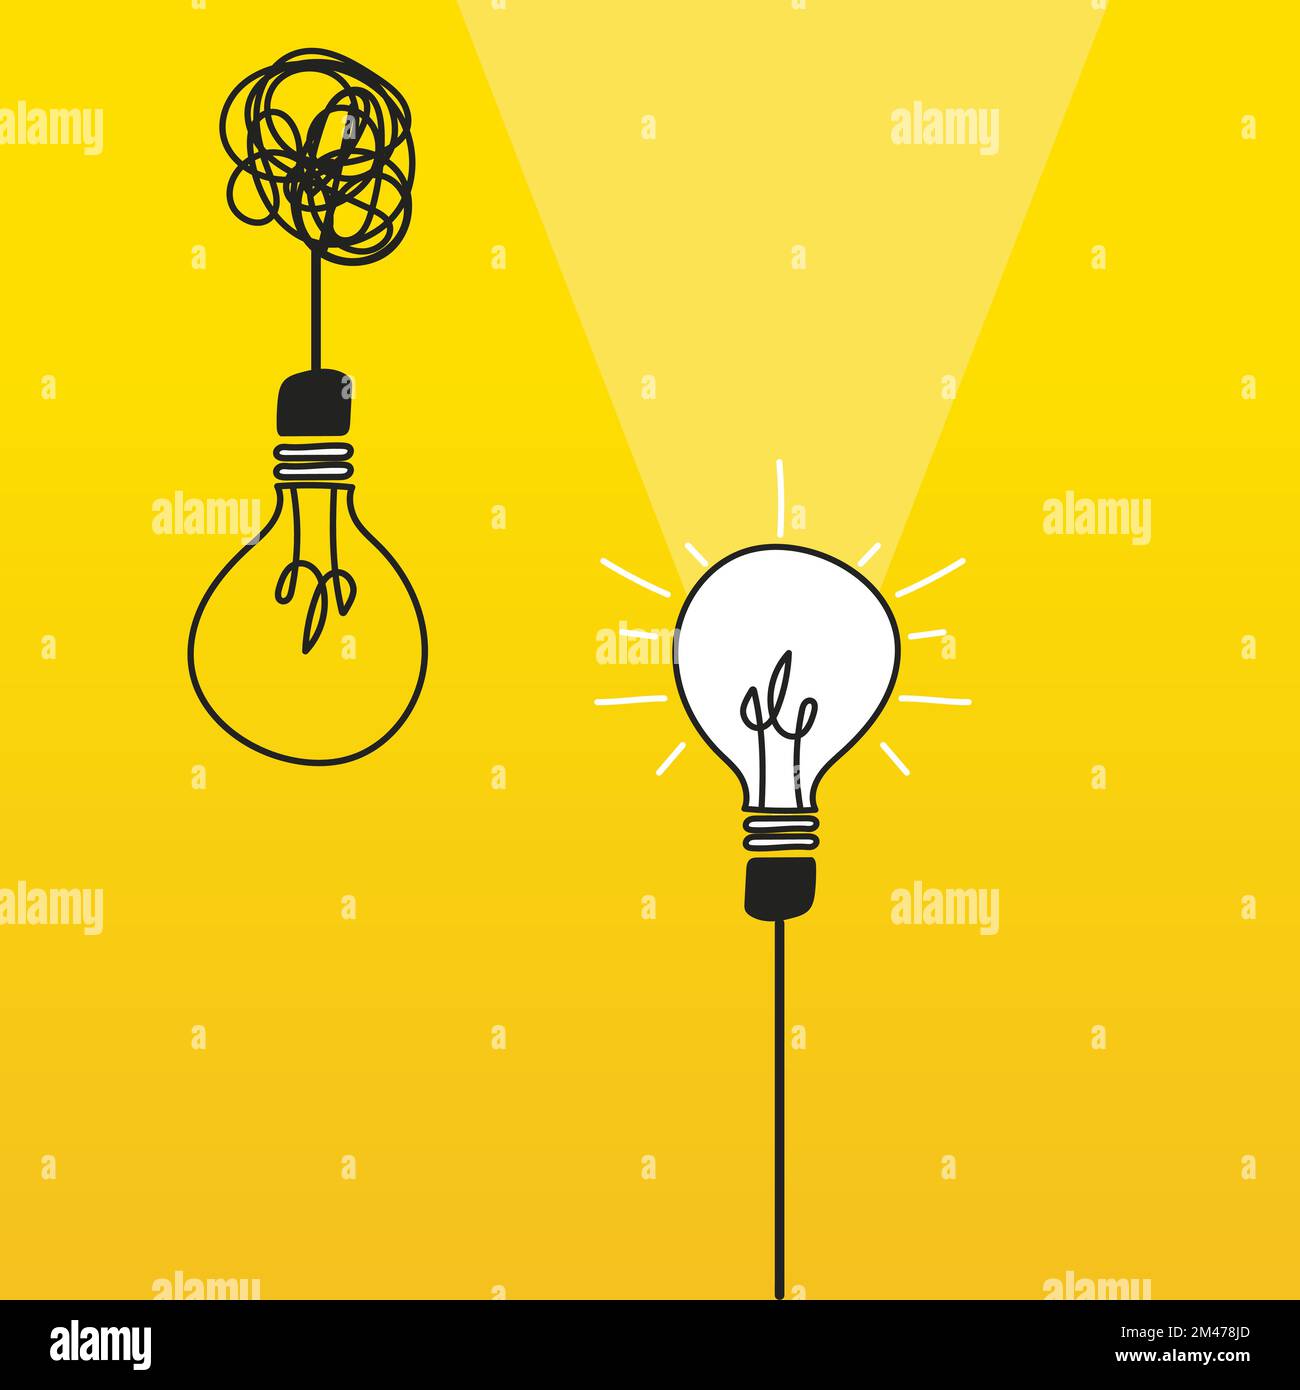 Konzept des Brainstormings und innovativer Ideen. Glühbirnen auf gelbem Hintergrund, kreativer Prozess. Führung und Unternehmergeist Stock Vektor